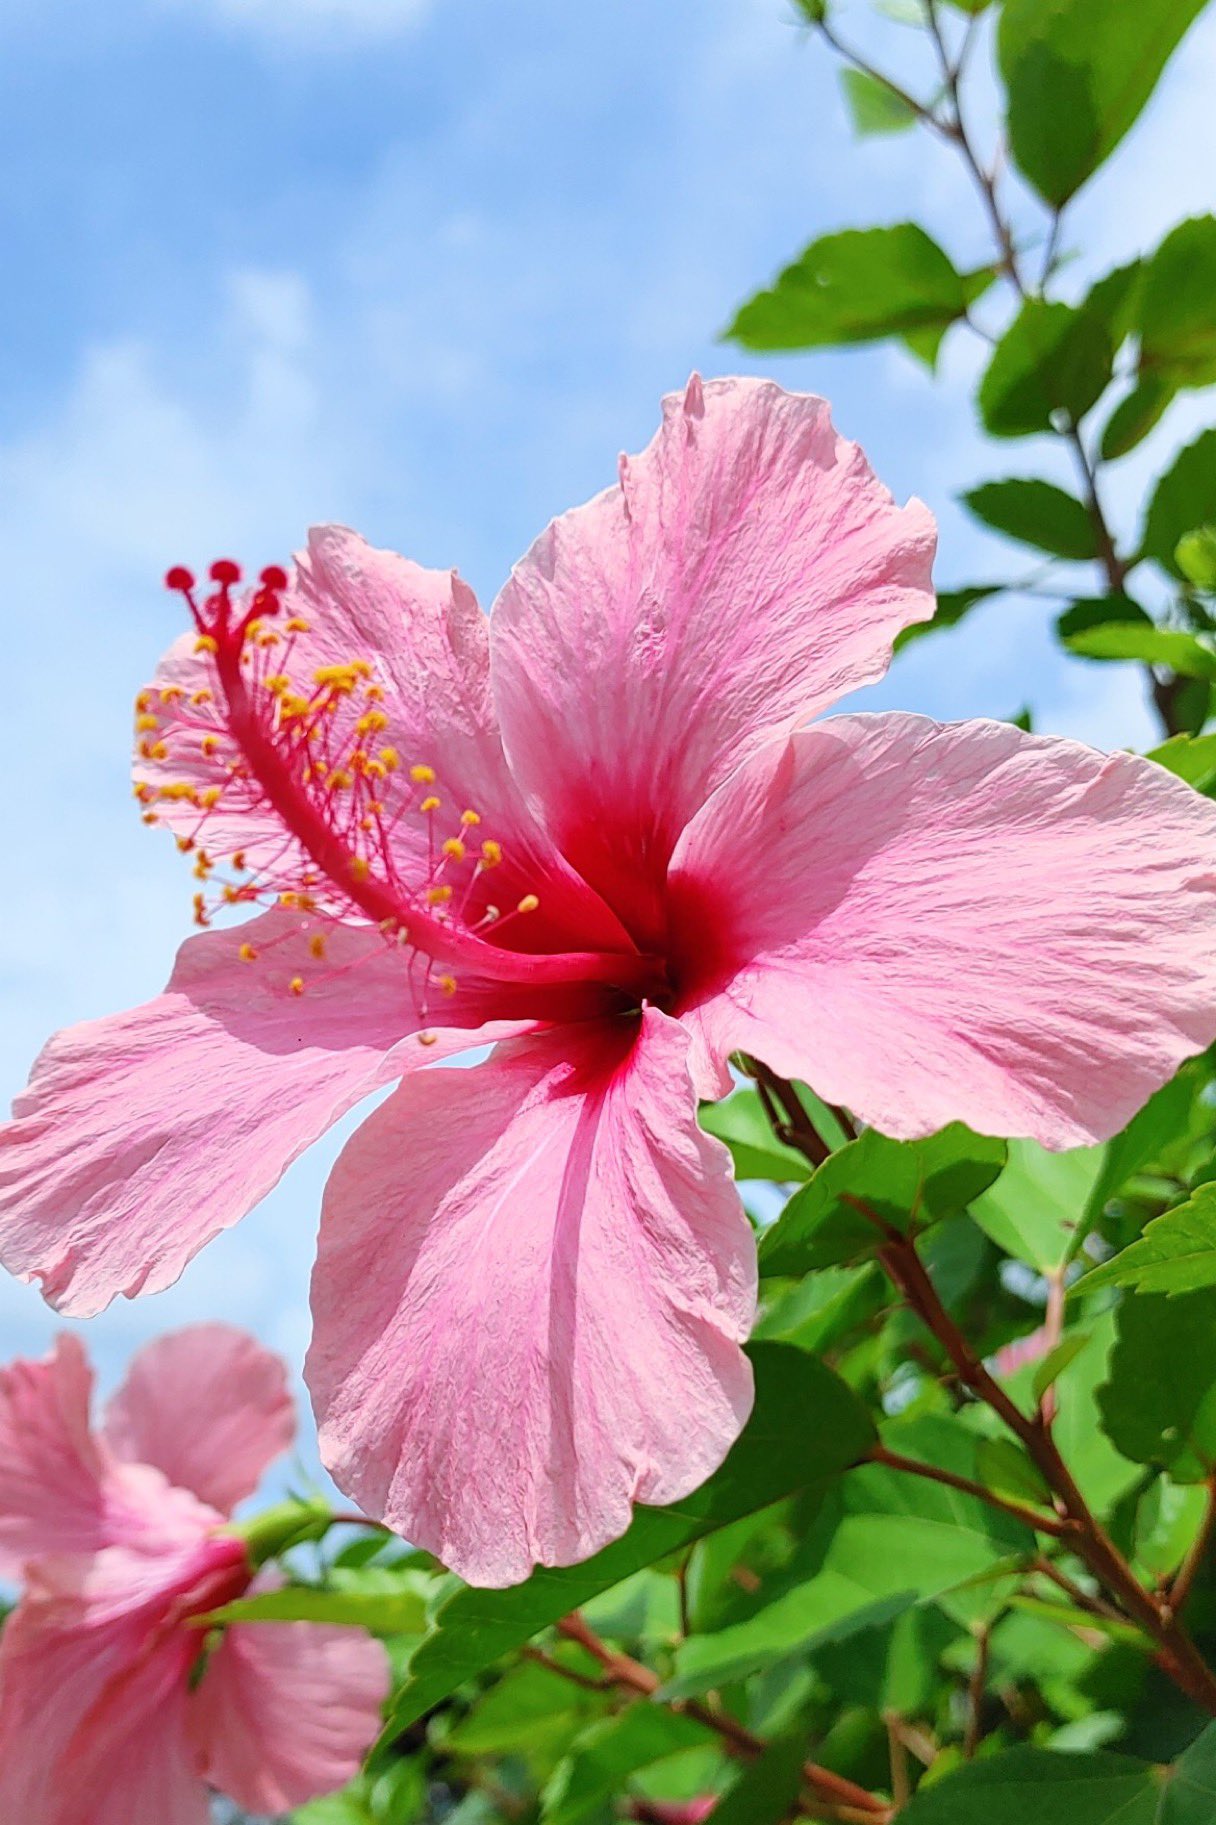 𝓜𝓲𝓡𝓾𝓡𝓮𝓘 可愛いハイビスカス 日本では沖縄の花で 一般では ハワイ 州の花であり ハワイ語では アロアロ と呼ばれている ハイビスカス の花言葉は 繊細な美 新しい恋 ハワイでは 告白によって ハイビスカス の花の色が